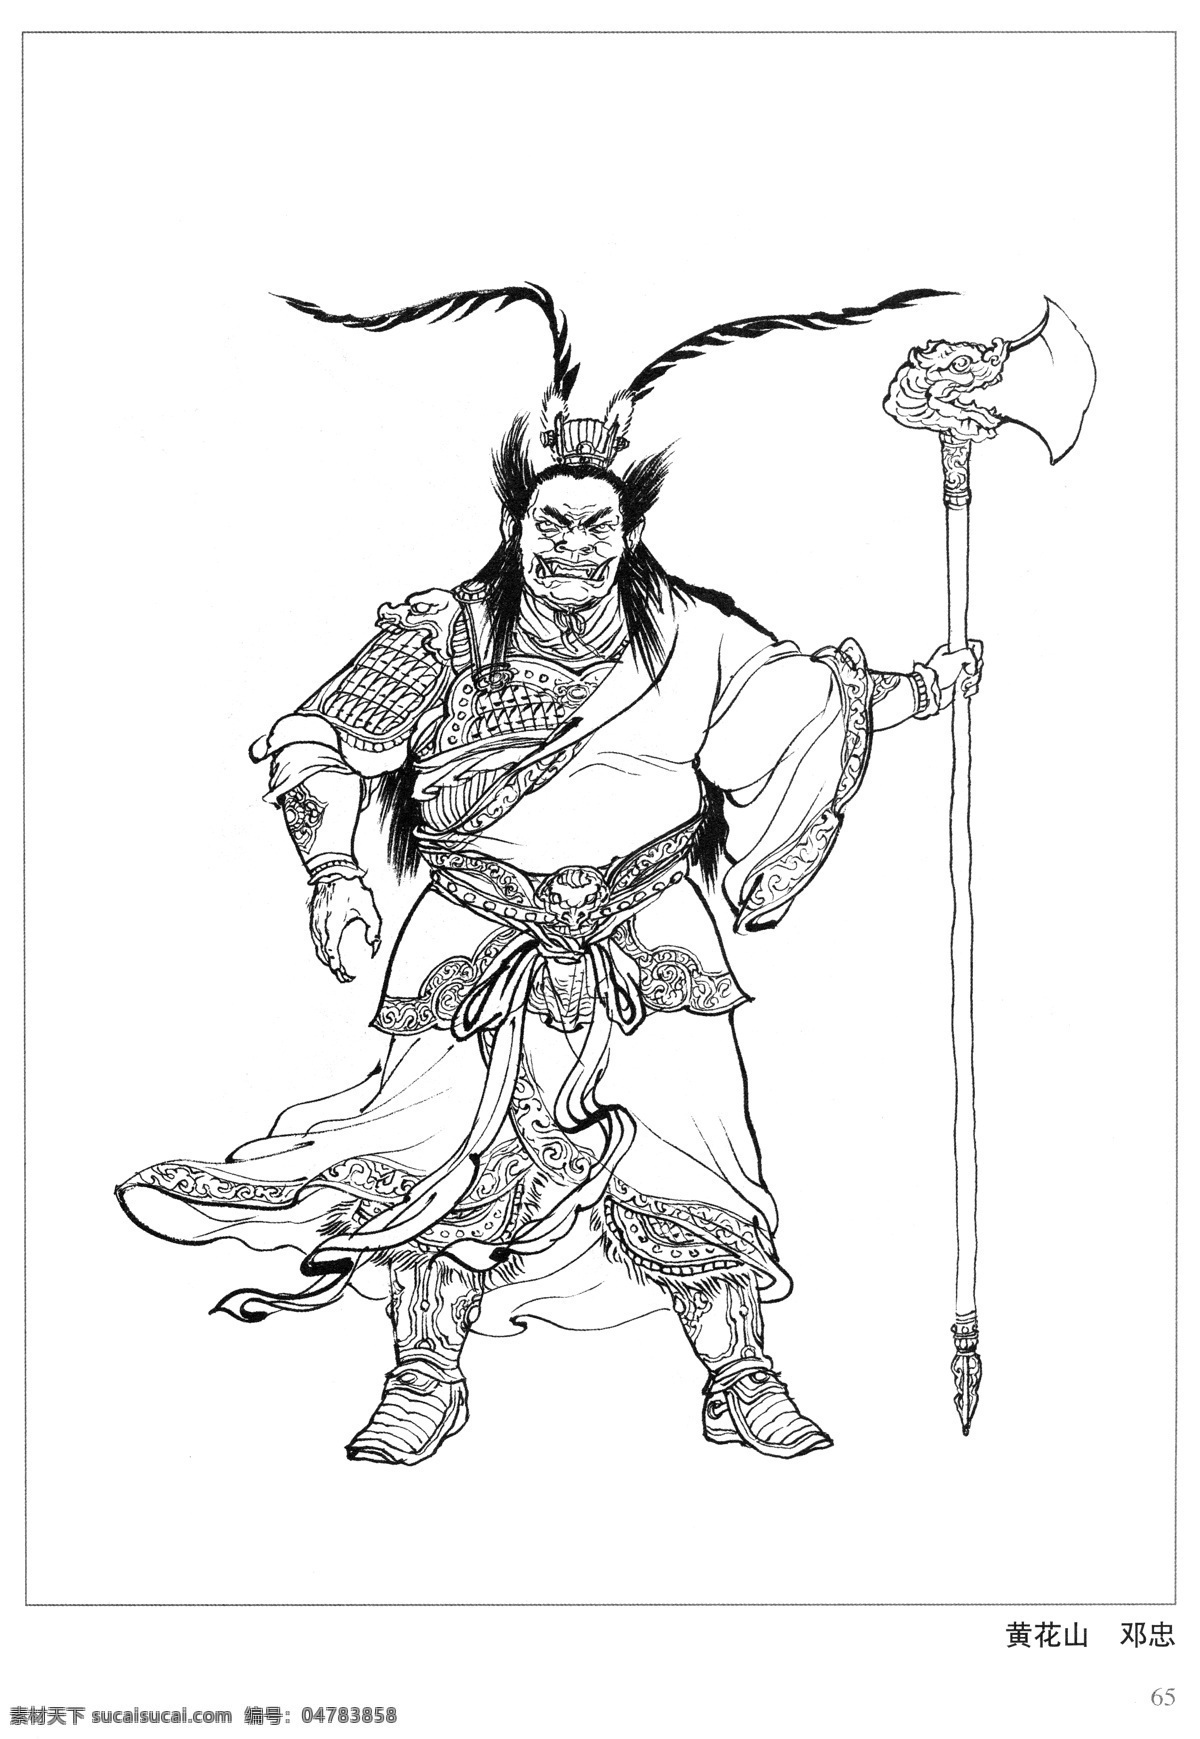 黄花山 邓忠 封神演义 古代 神仙 白描 人物 图 文化艺术 传统文化